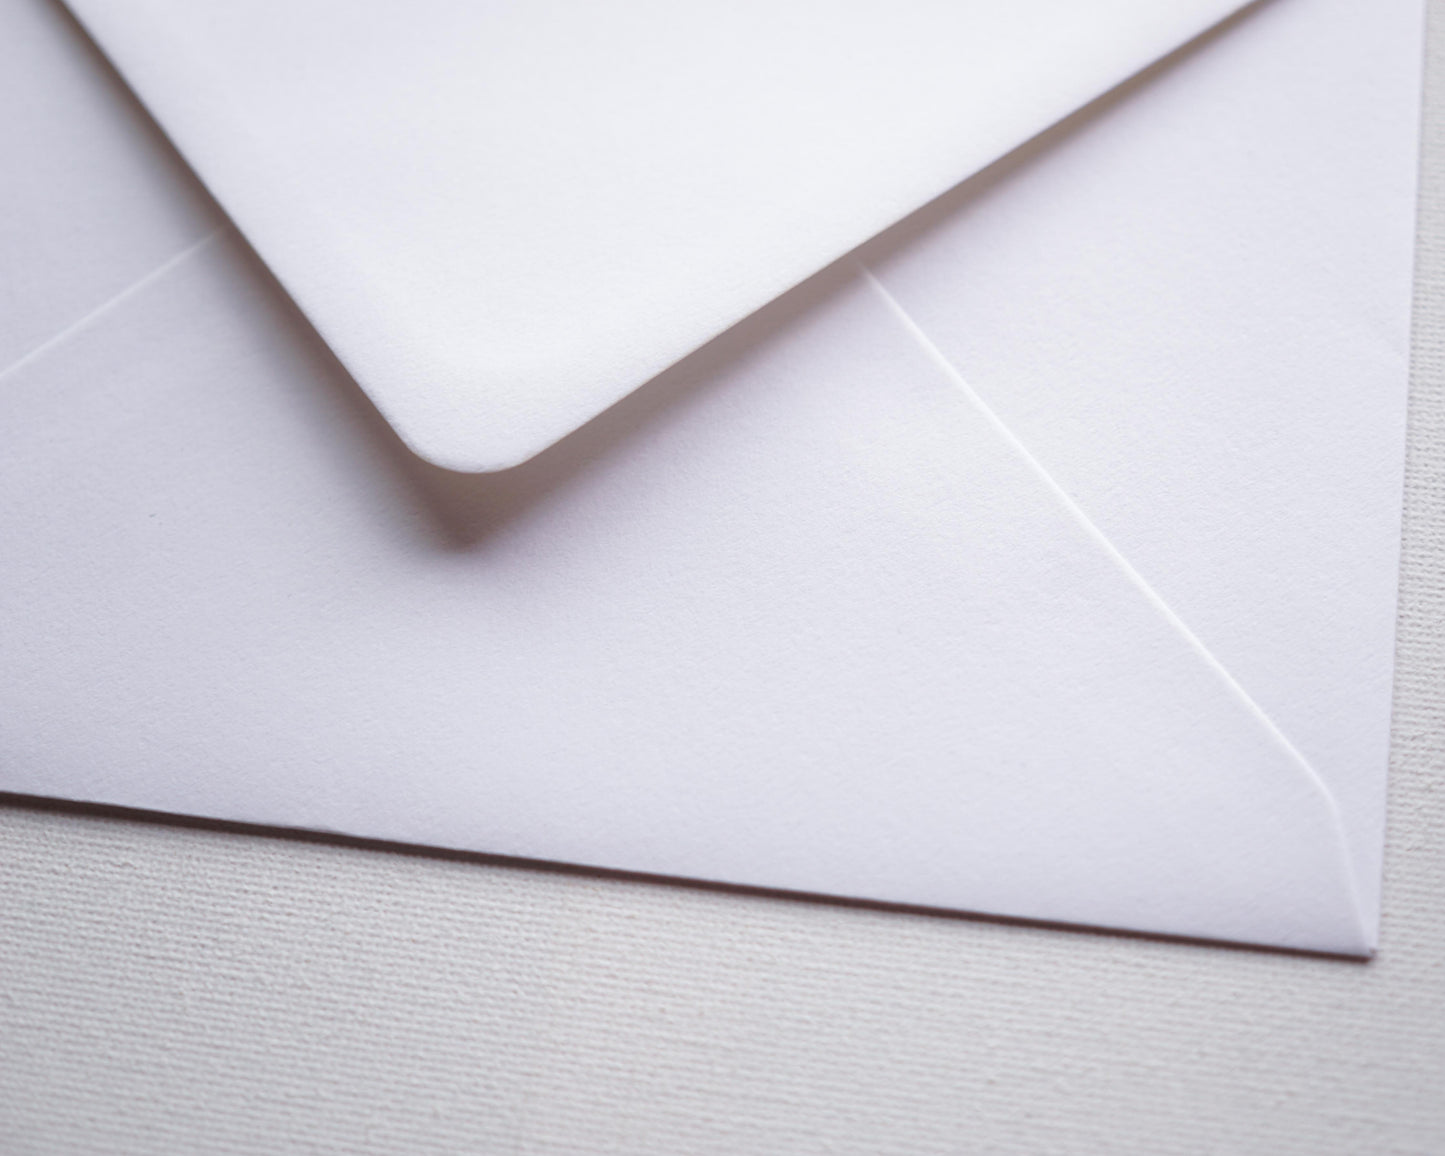 Fehér díszboríték textúrált papírból- C6 - 114 x 162 mm-Boríték-C6 - 11.4 x 16.2 cm -boríték, fehér boríték - plicuri colorate - plicuri speciale -Erdélyi Esküvői Meghívók